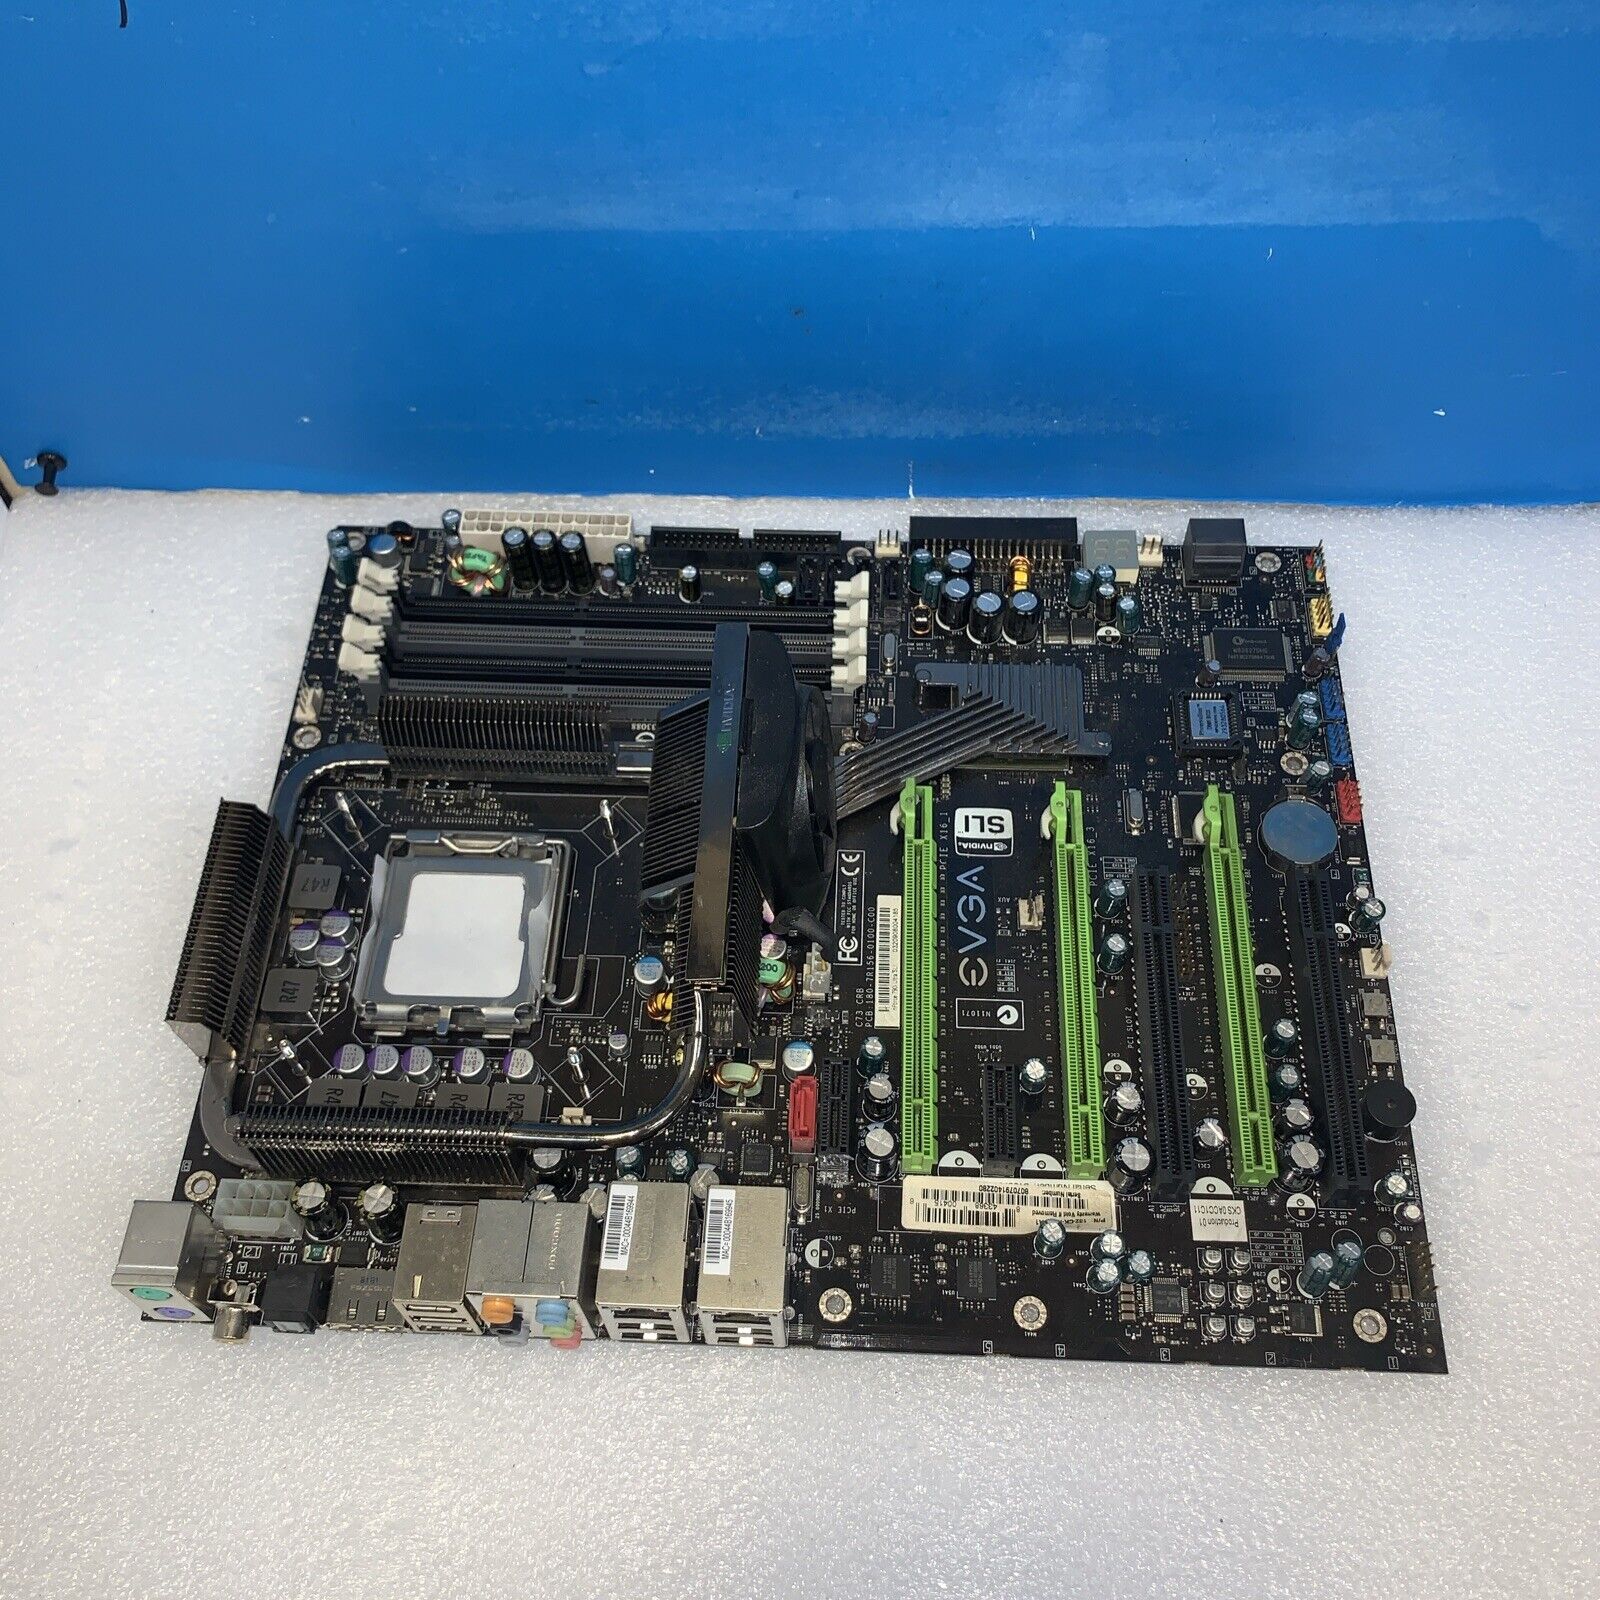 EVGA 132-CK-NF79-A1 LGA 775 NVIDIA nForce 790i Ultra SLI ATX Motherboard